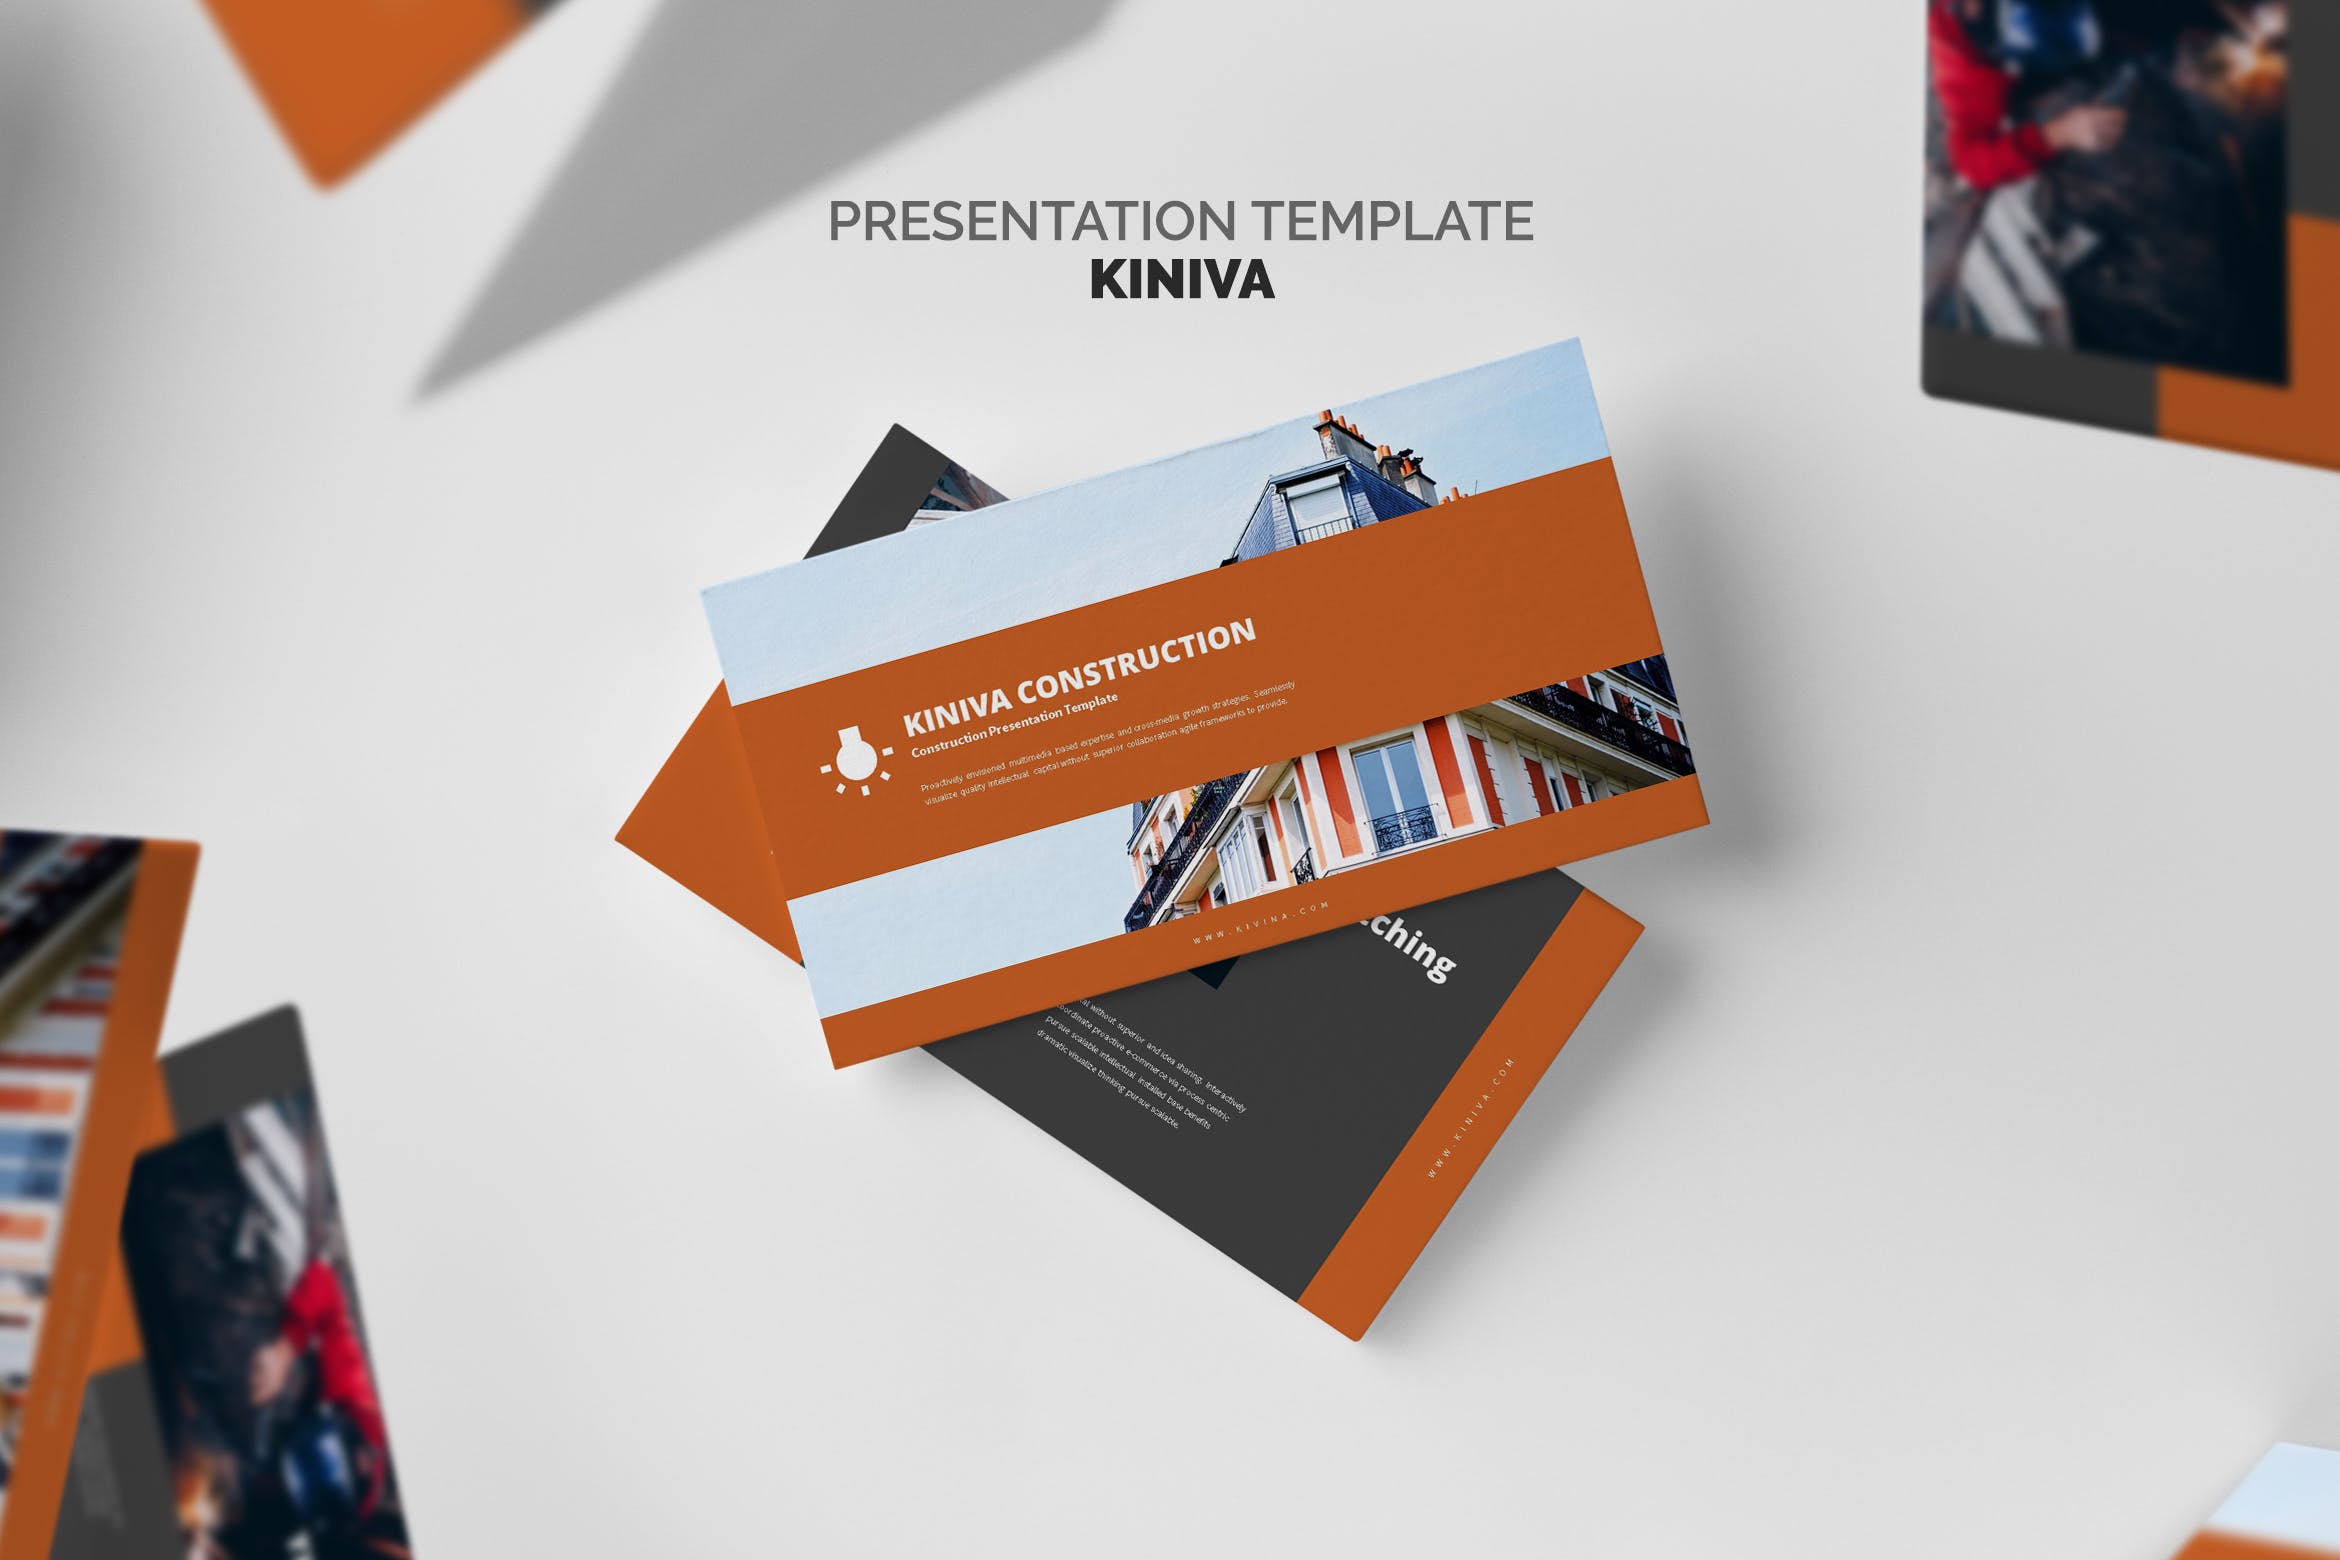 建筑与工程企业&项目介绍16图库精选PPT模板 Kiniva : Construction & Engineering Powerpoint插图